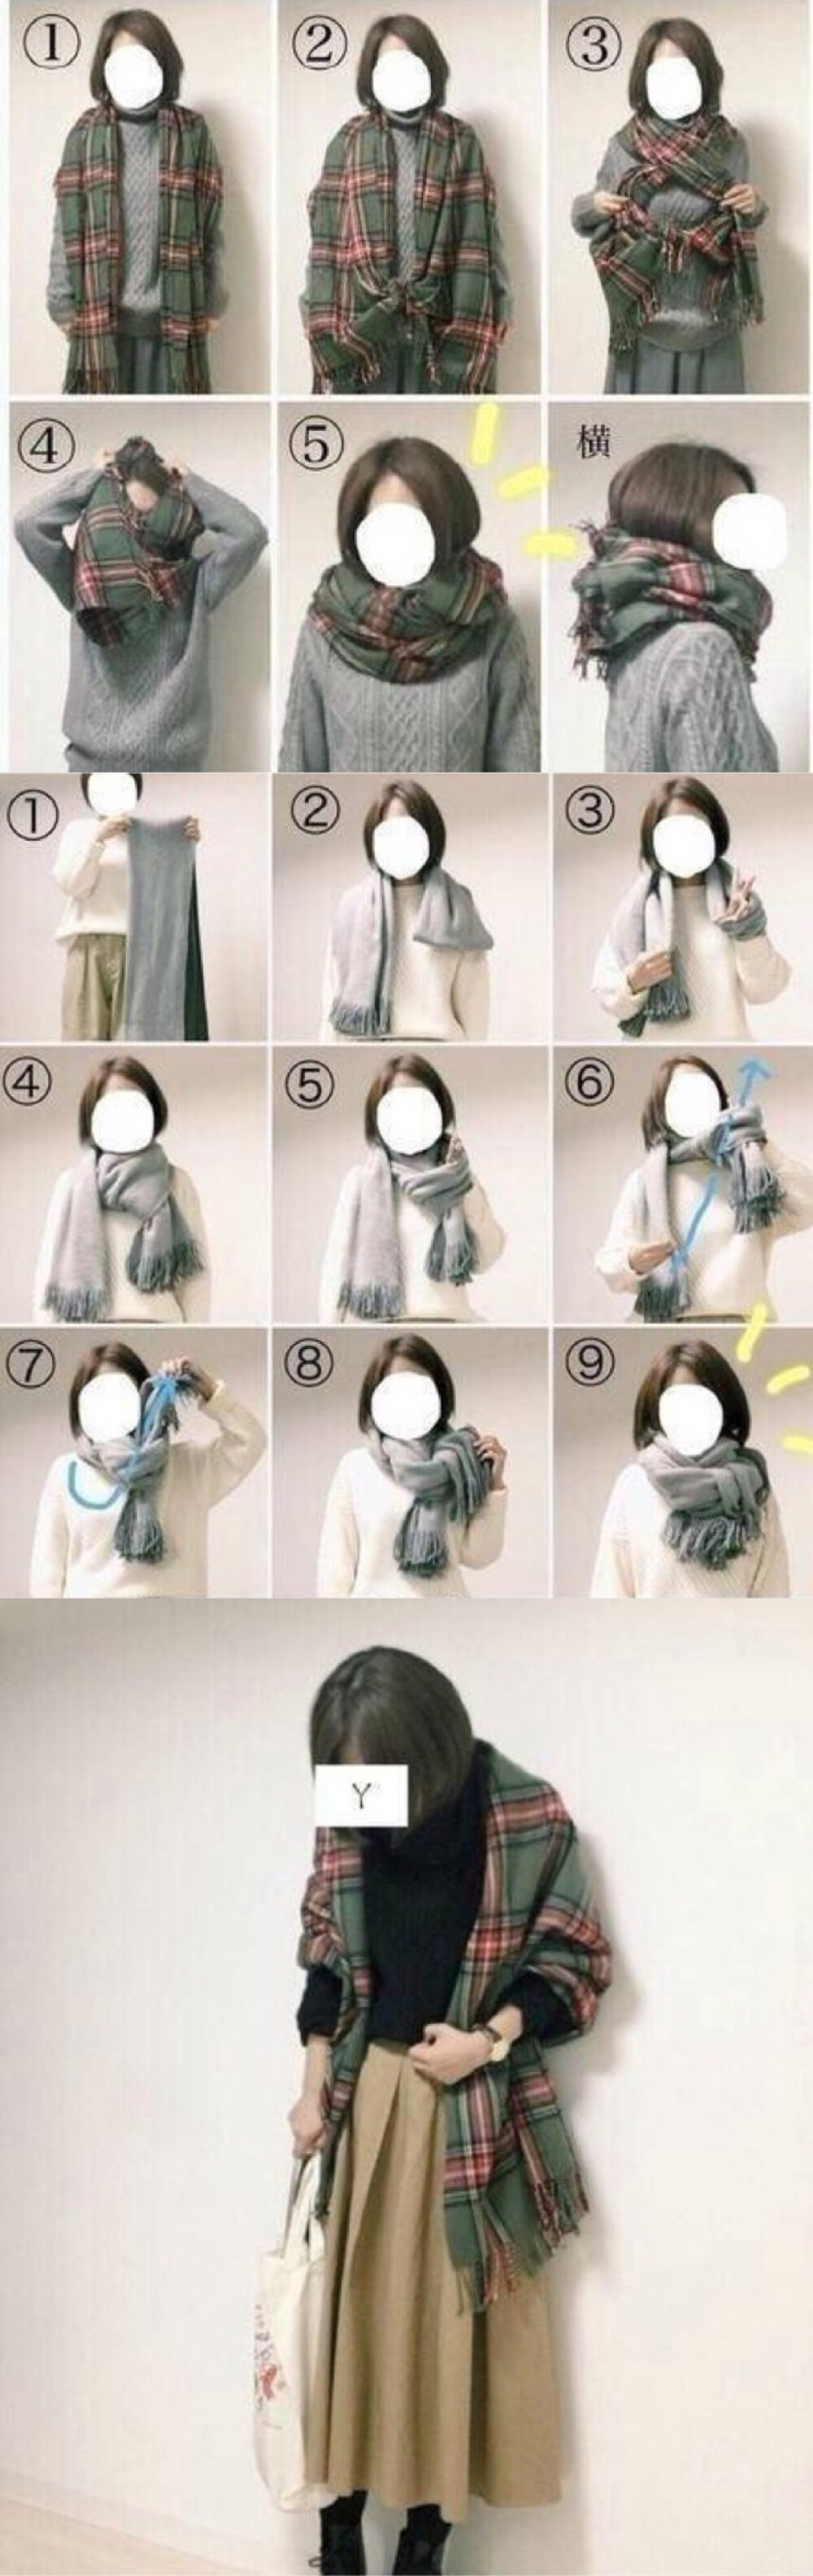 穆斯林围巾的戴法图解图片